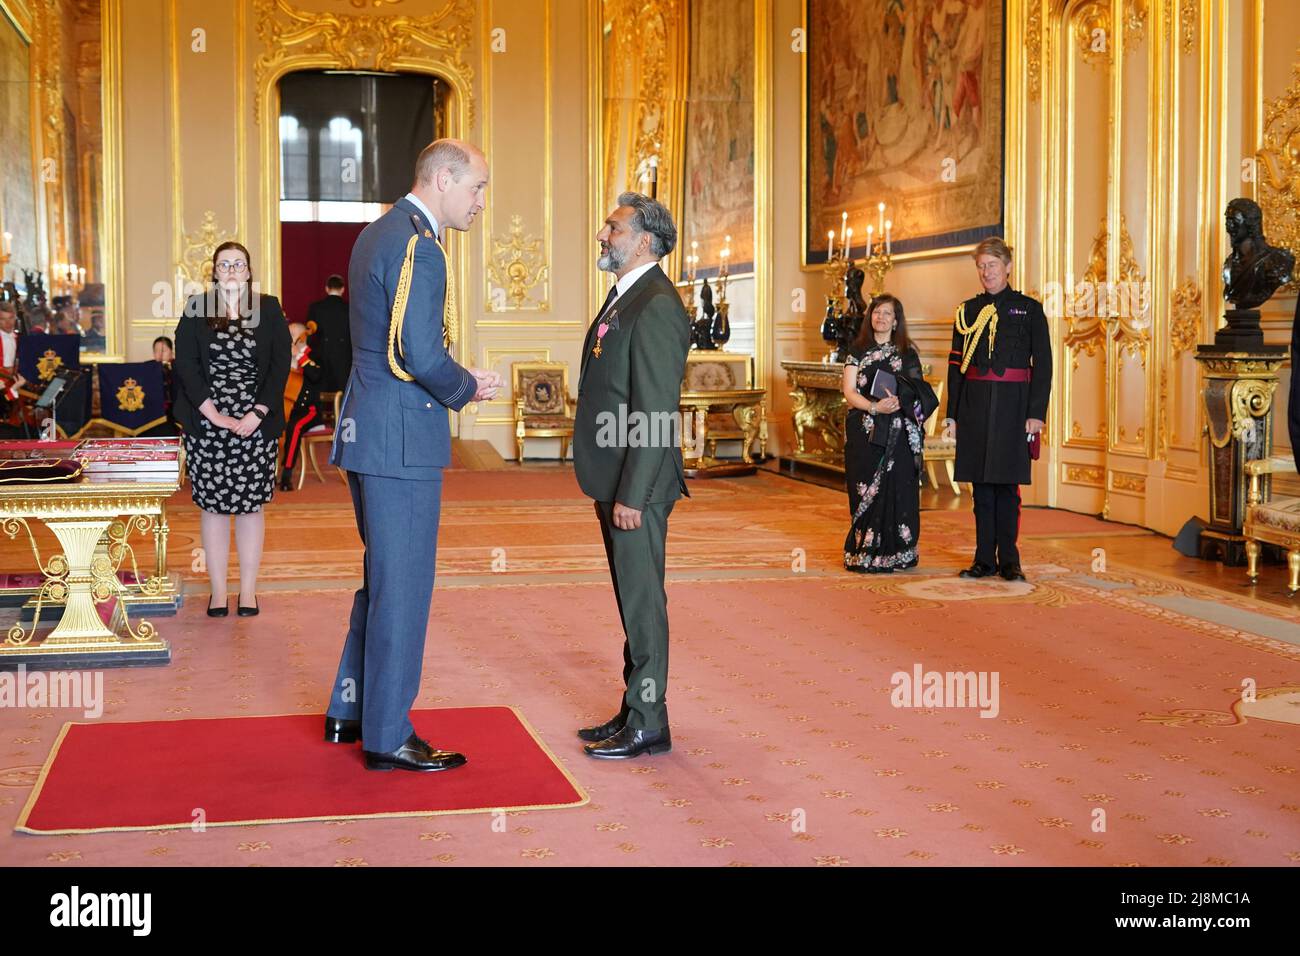 Nitin Ganatra wird vom Herzog von Cambridge in Windsor Castle zum OBE (Offizier des Order of the British Empire) ernannt. Bilddatum: Dienstag, 17. Mai 2022. Stockfoto